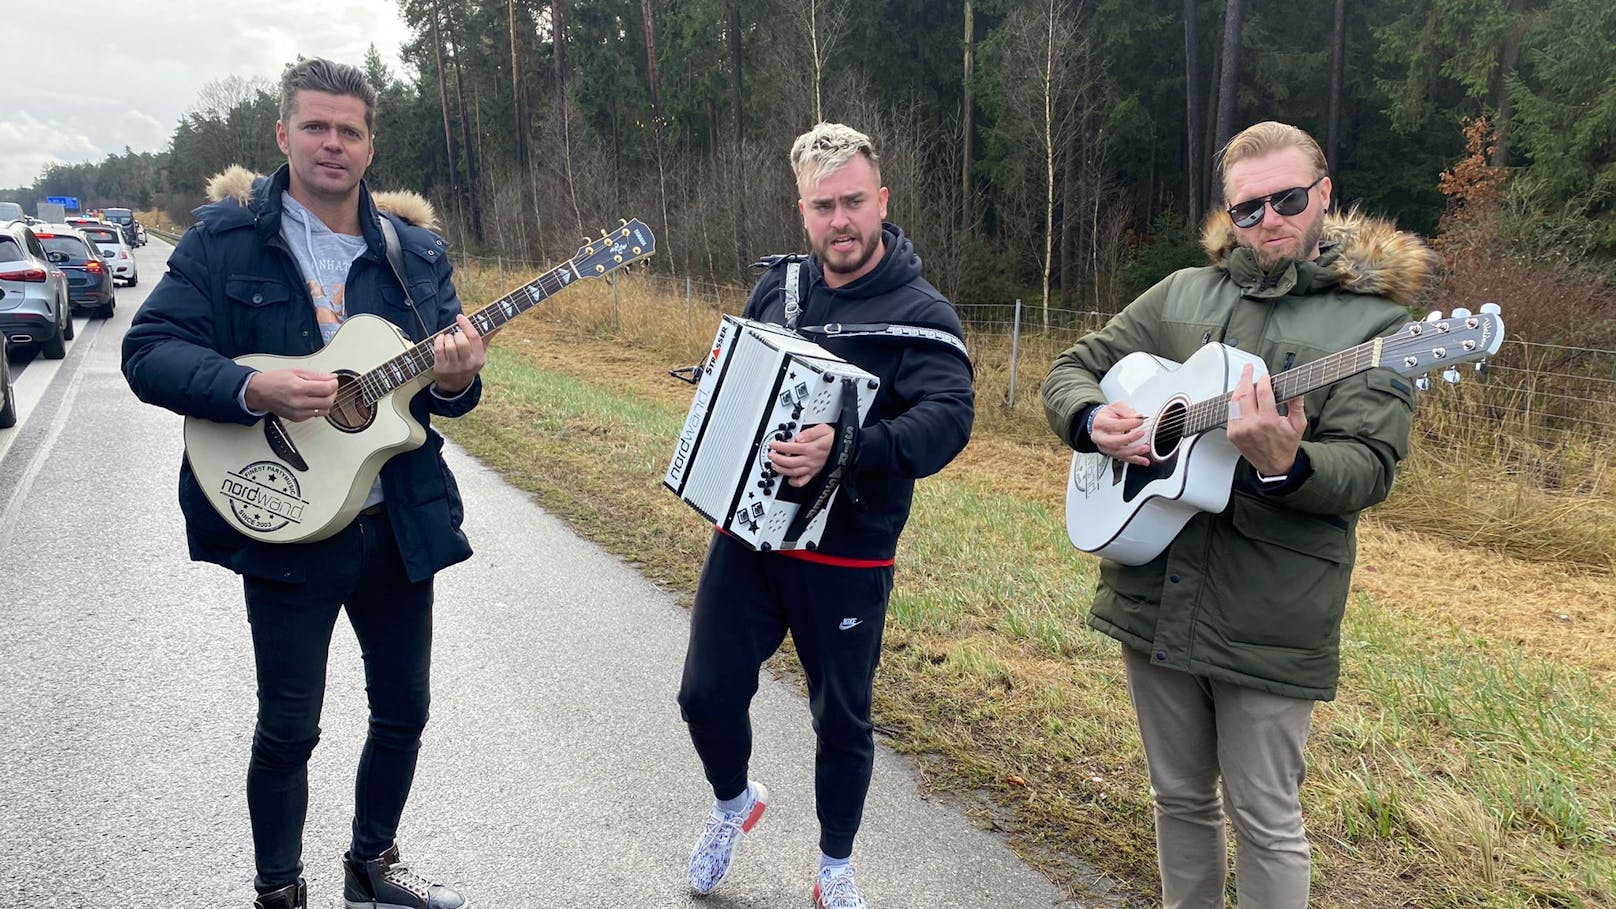 Die steirische Party-Band "<strong>Nordwand</strong>" sorgte für "Zeltfestalarm" (so der Name eines ihrer Hits) am Pannenstreifen der A3 in Bayern.